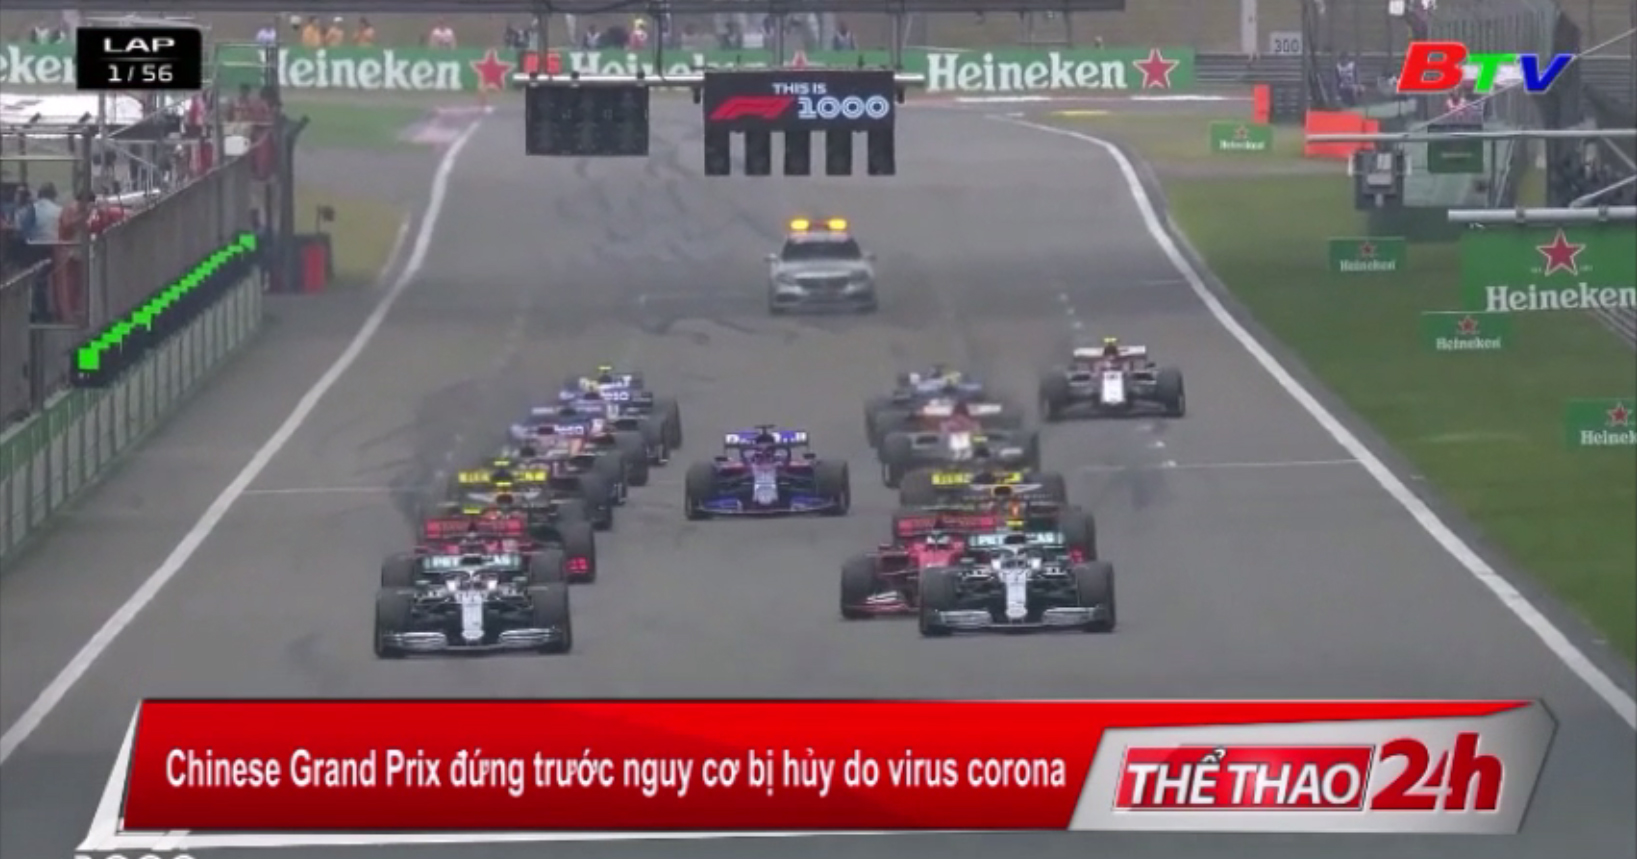 Chinese Grand Prix đứng trước nguy cơ bị hủy do virus corona